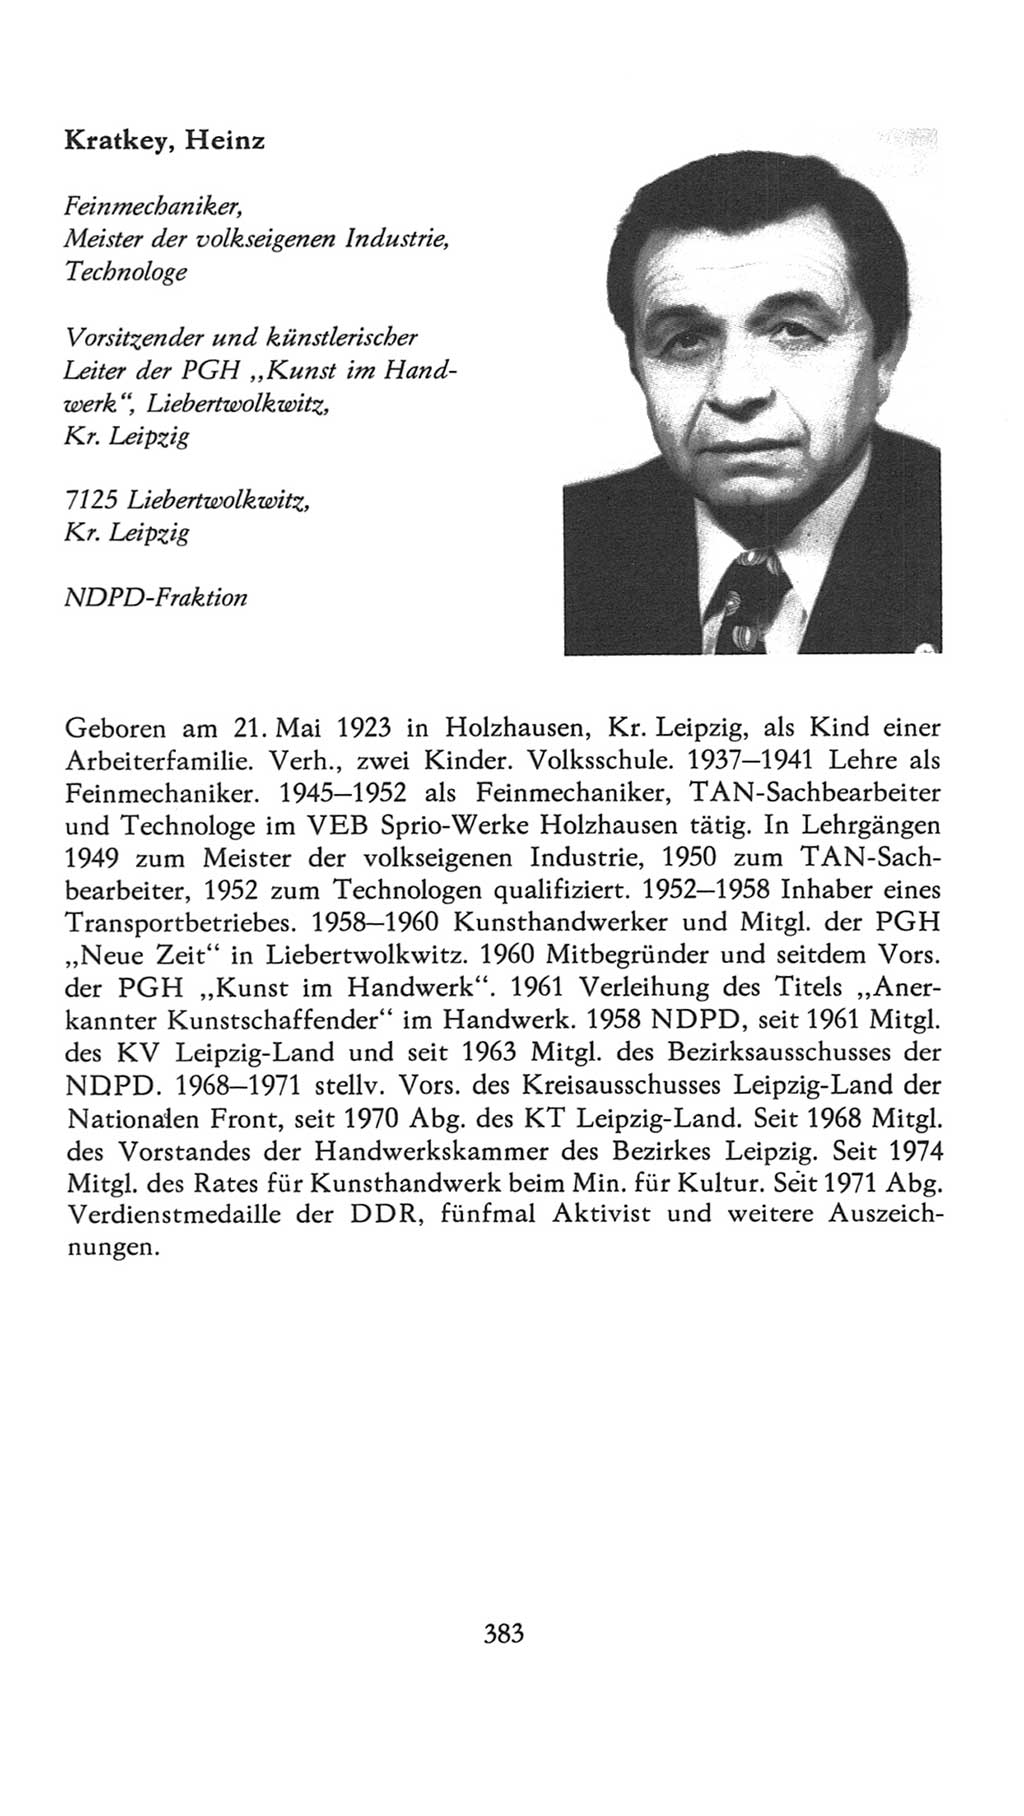 Volkskammer (VK) der Deutschen Demokratischen Republik (DDR), 7. Wahlperiode 1976-1981, Seite 383 (VK. DDR 7. WP. 1976-1981, S. 383)